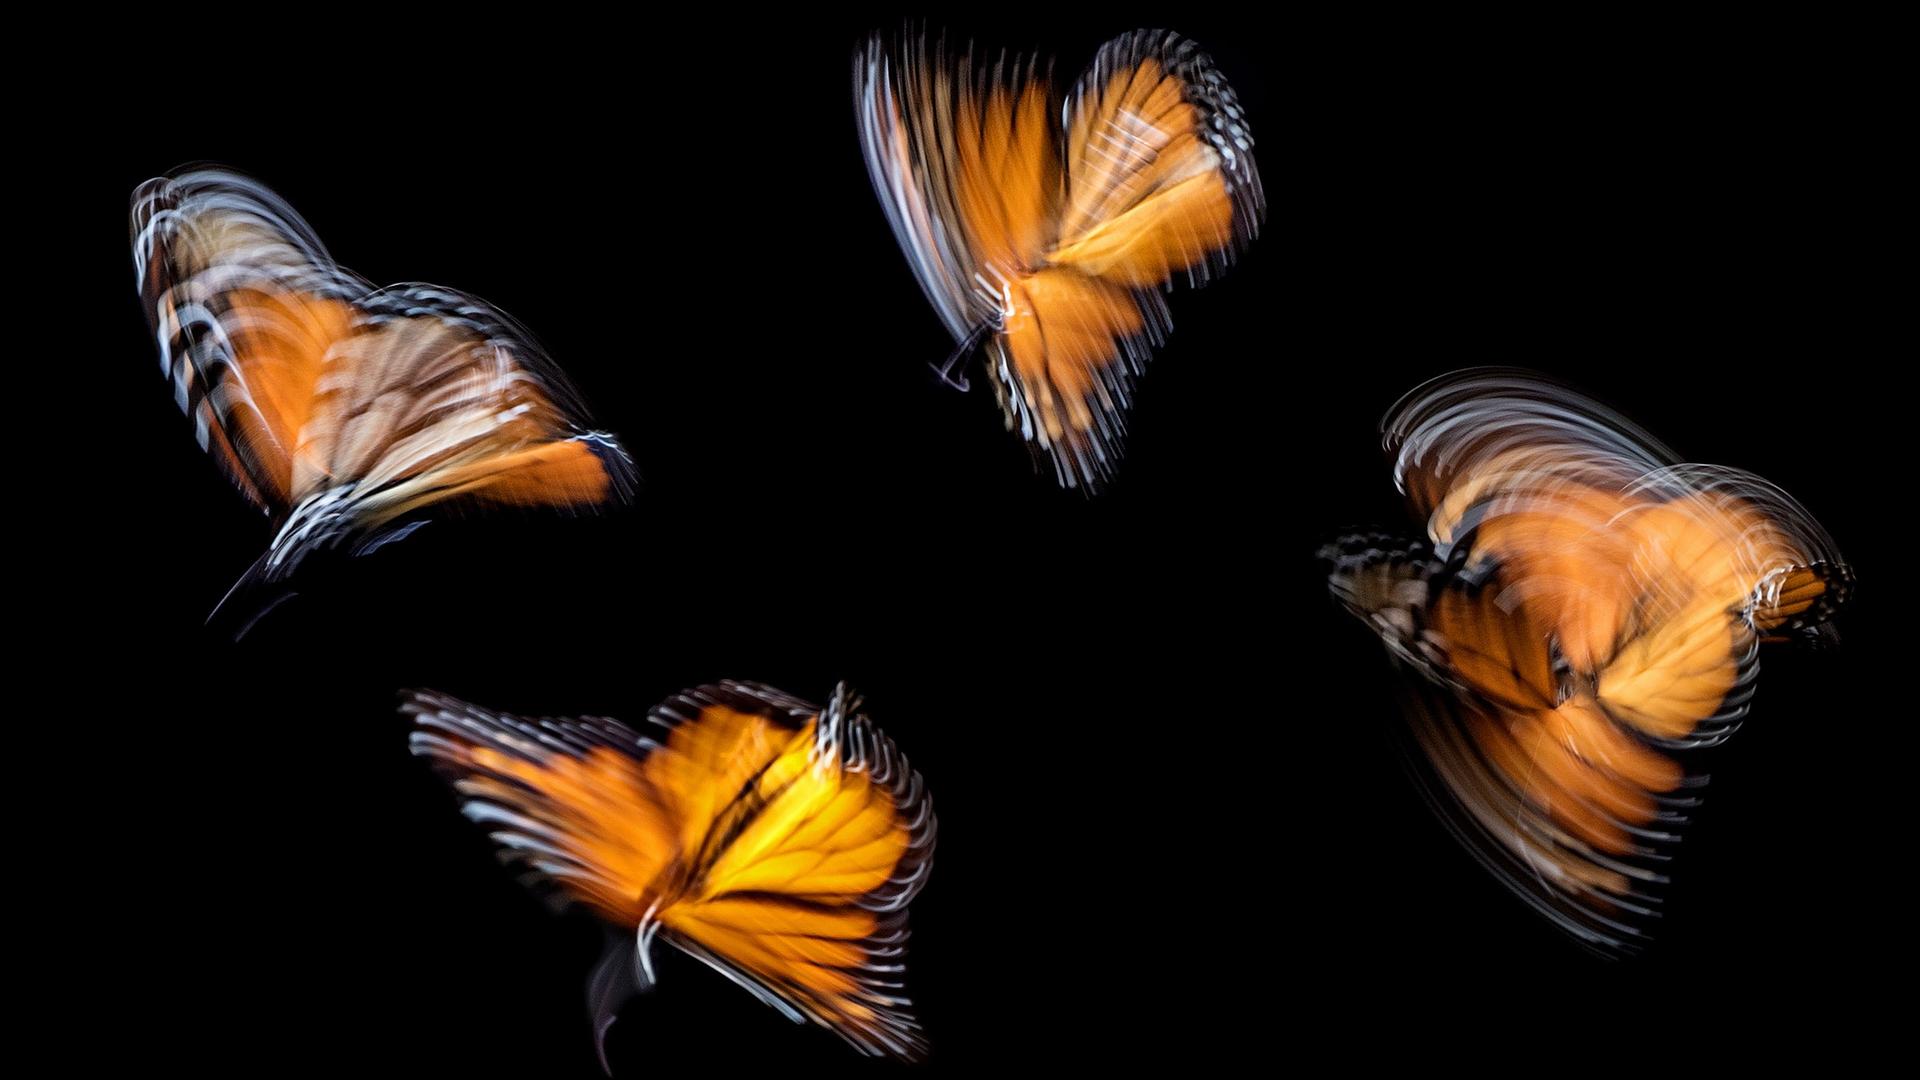 Schmetterlinge beim Flug in Langzeitaufnahme fotografiert, sodass ihr Flügelschlag ungenau und wild abgebildet wird.